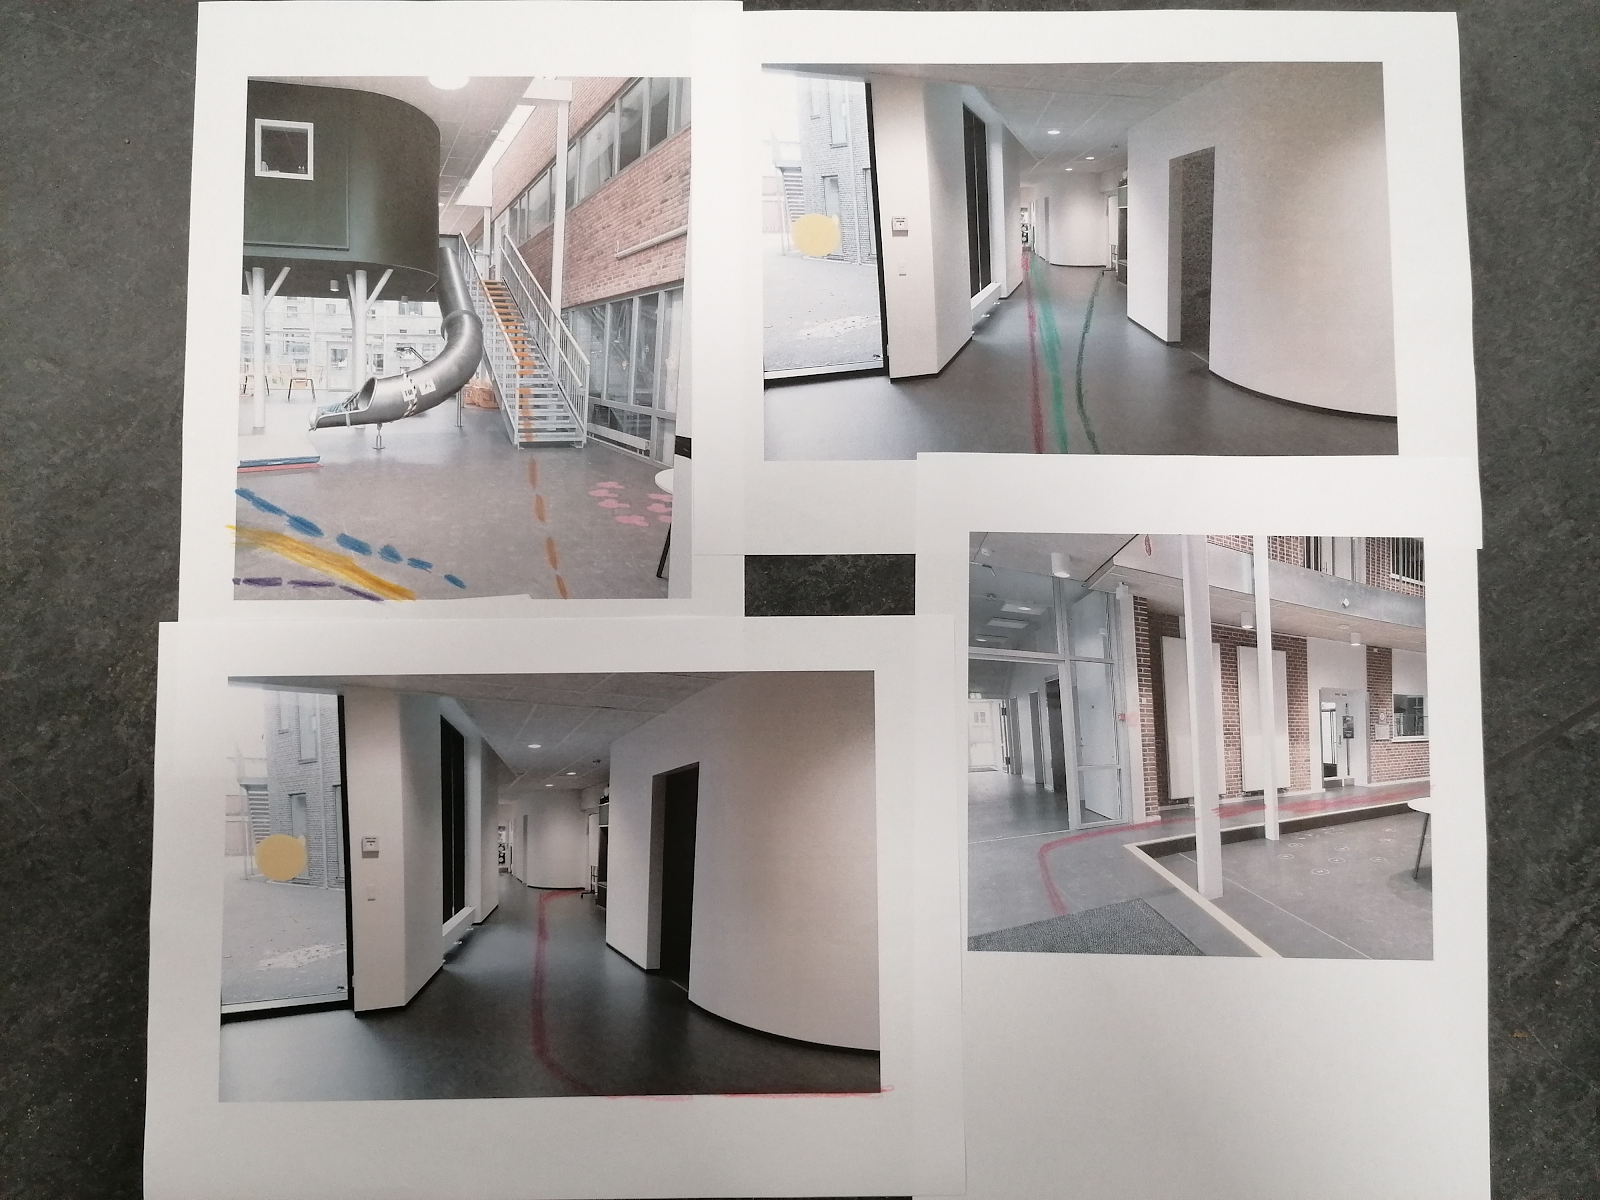 Collage af billeder fra gangarealet på en skole